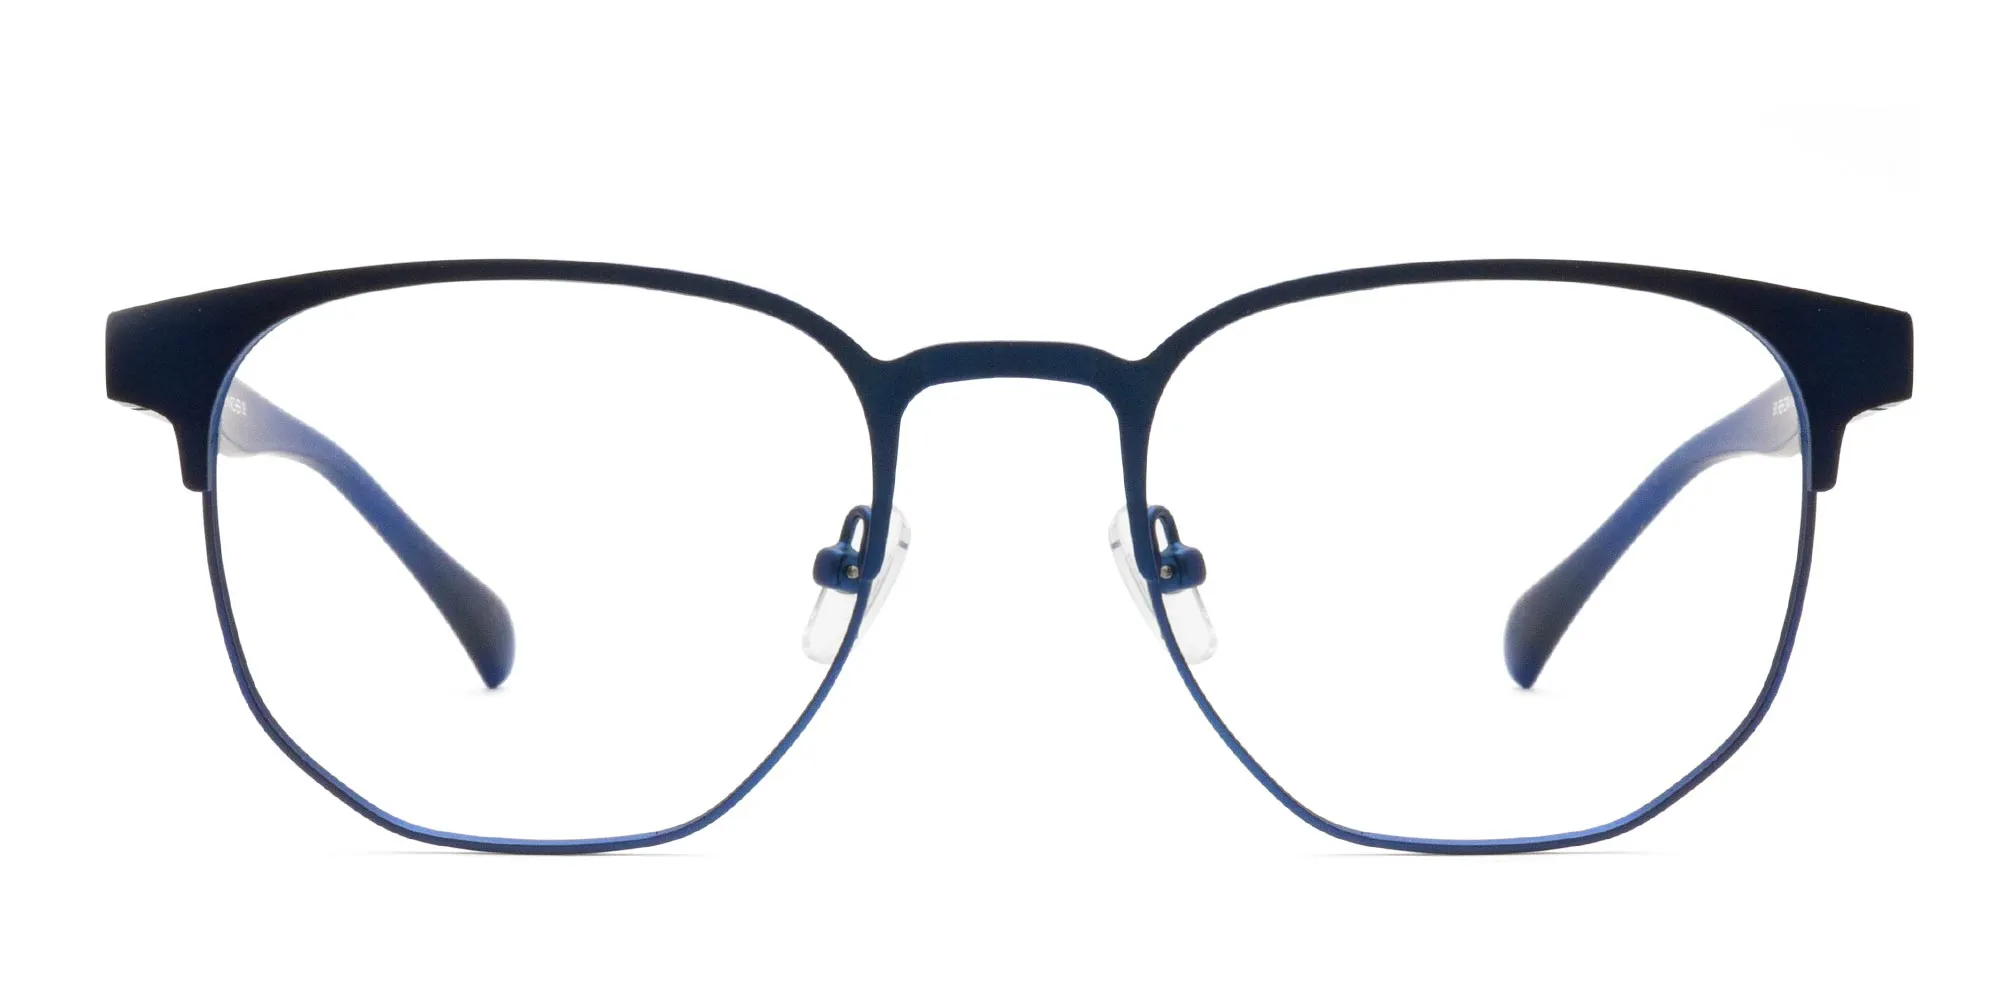 Geometric Shape Glasses-2